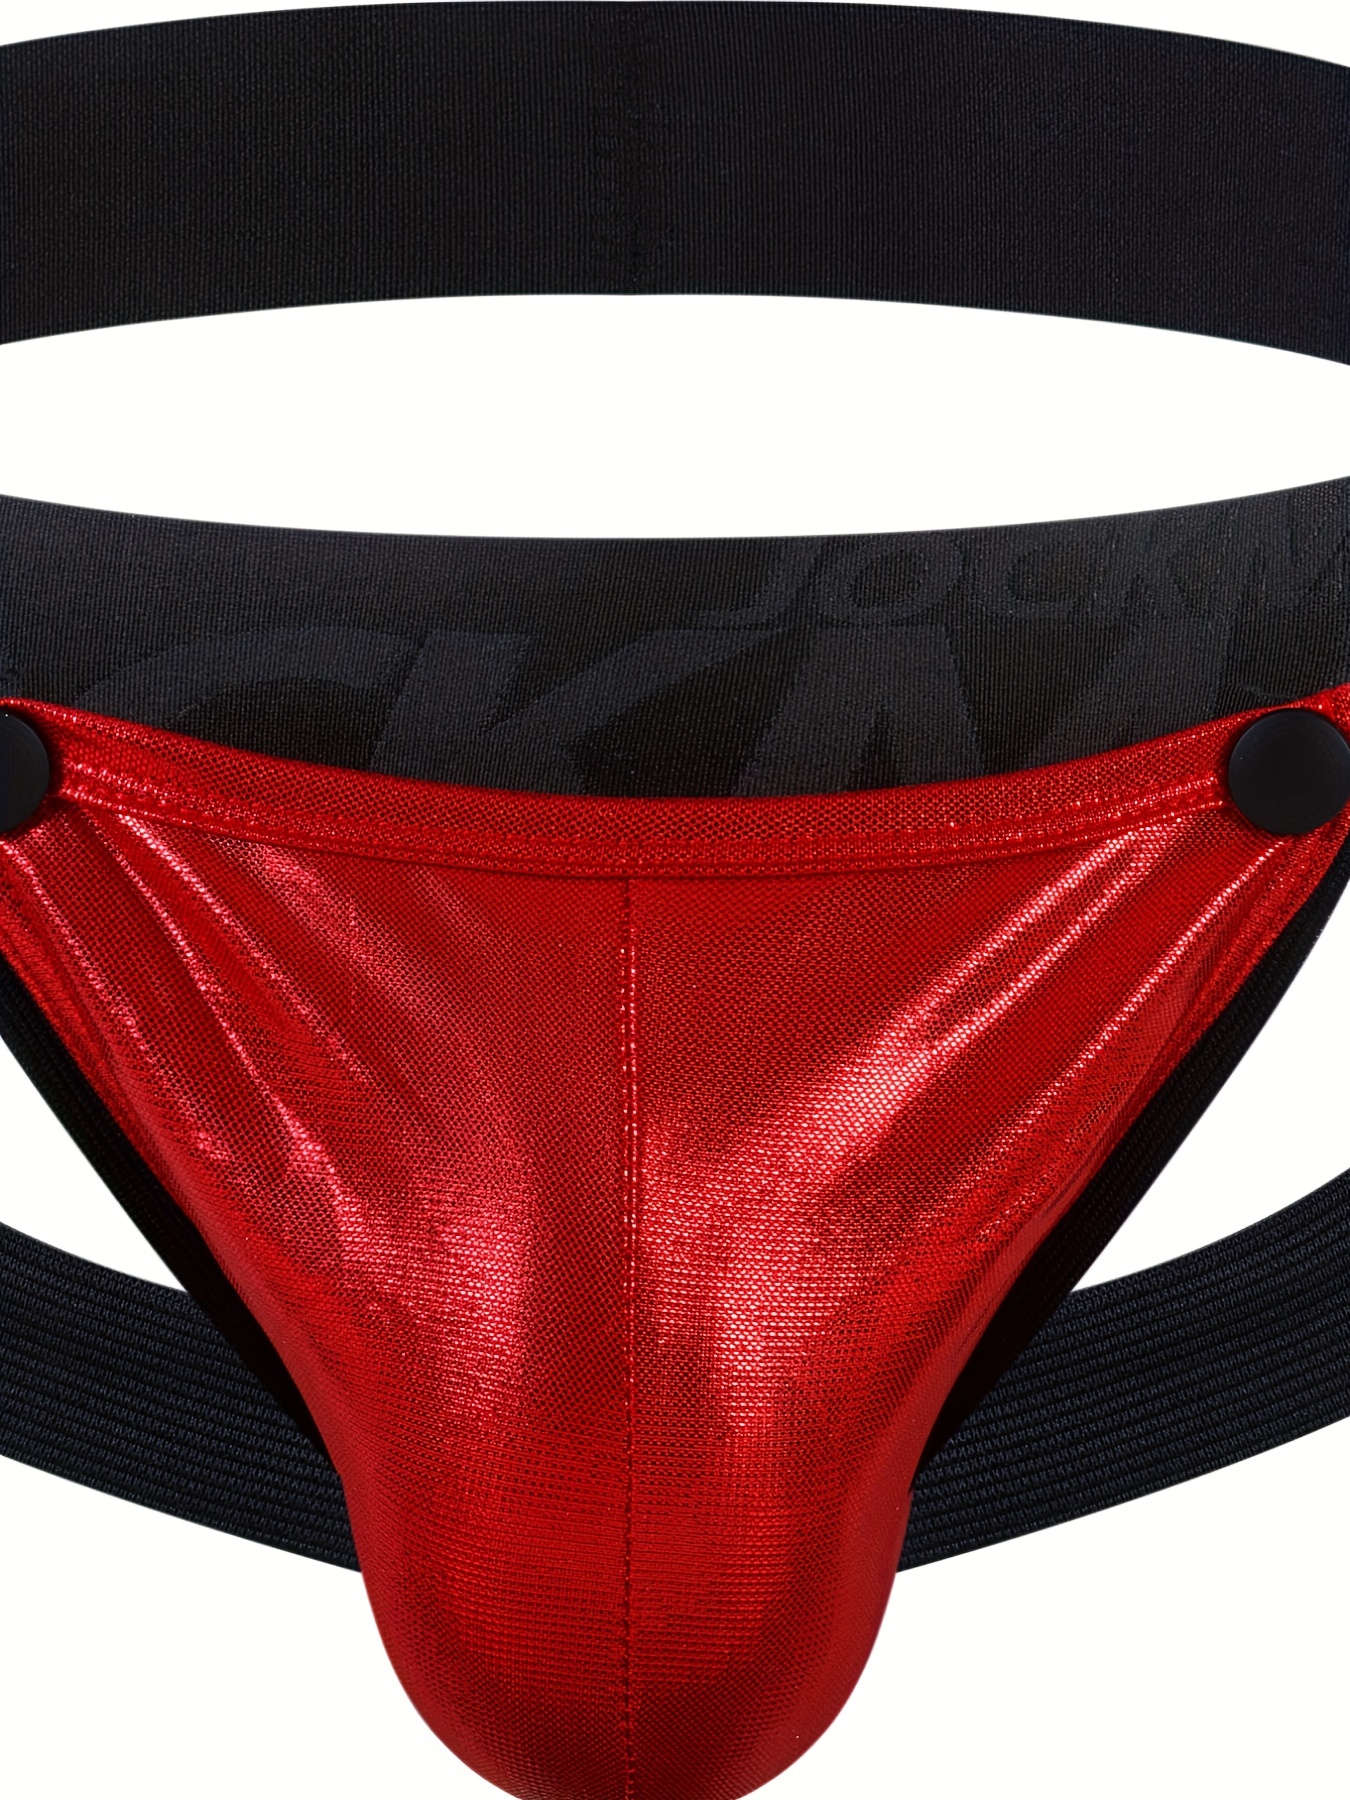 BODIY Women Low Rise Thong G-String Holographic Shiny Metallic Panties  T-back Tanga Underwear for Ladies Bikini Rave Briefs